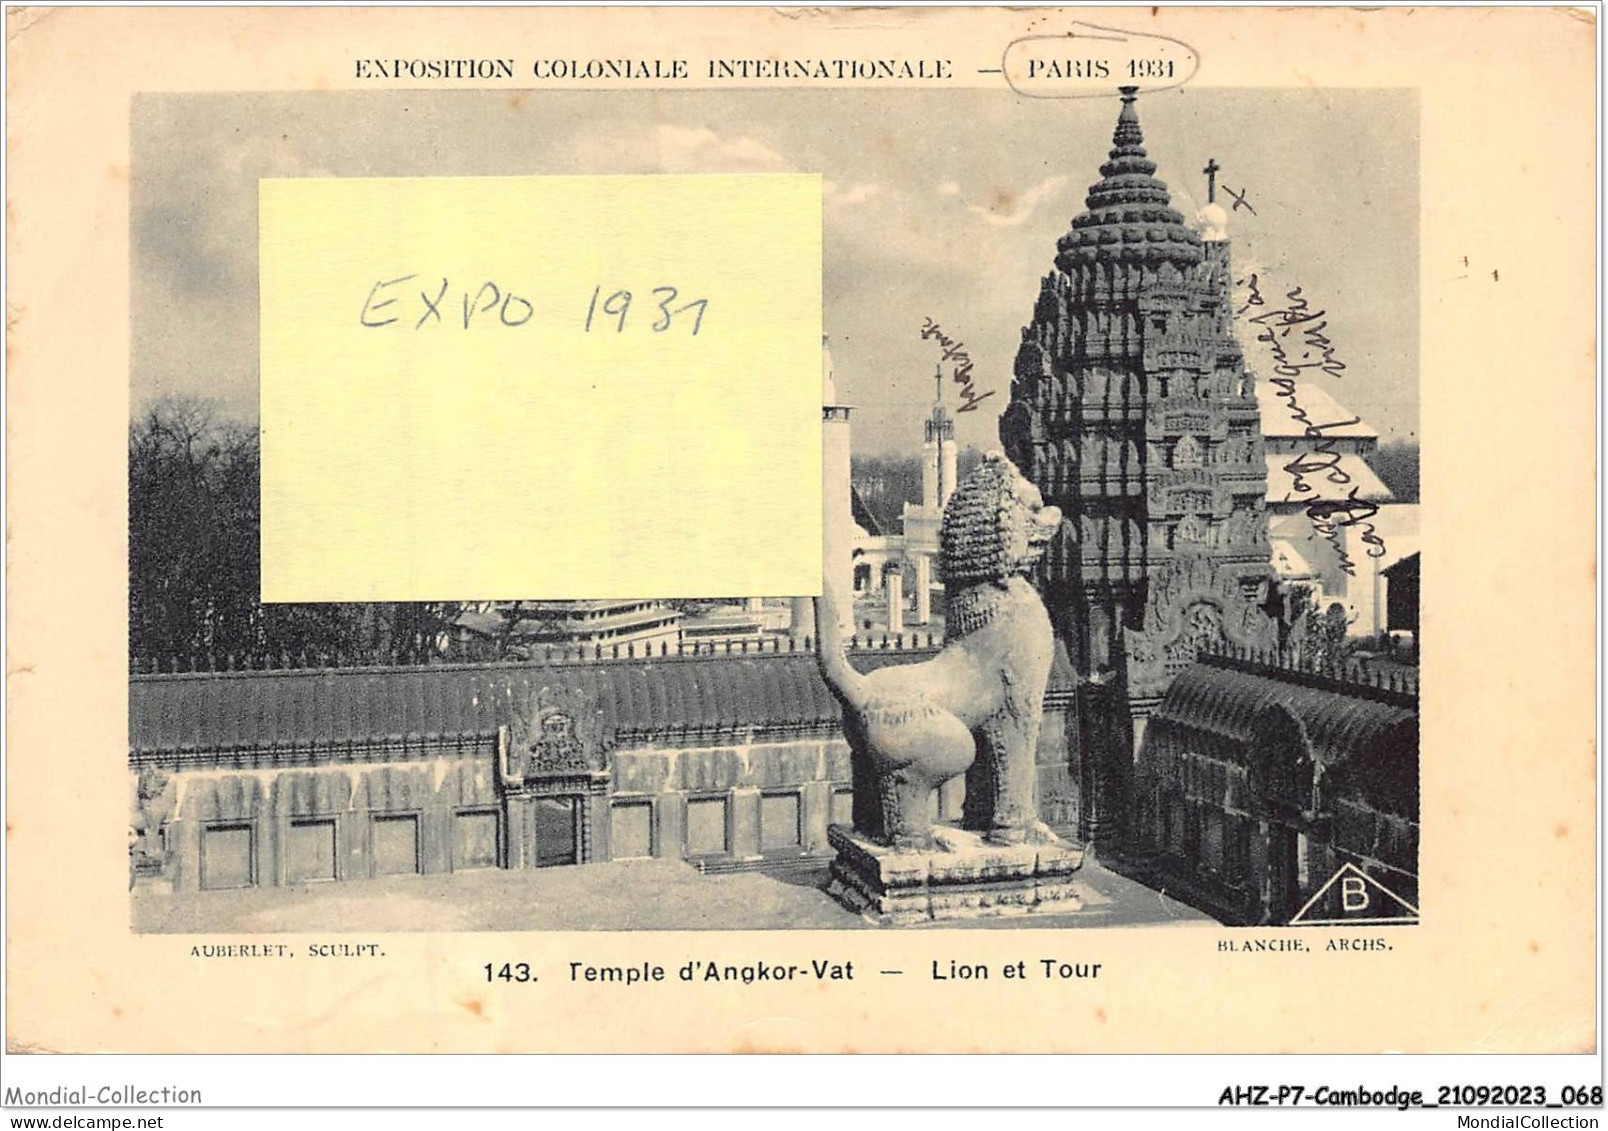 AHZP7-CAMBODGE-0630 - EXPOSITION COLONIALE INTERNATIONALE - PARIS 1931 - TEMPLE D'ANGKOR-VAT - LION ET TOUR - Cambodia